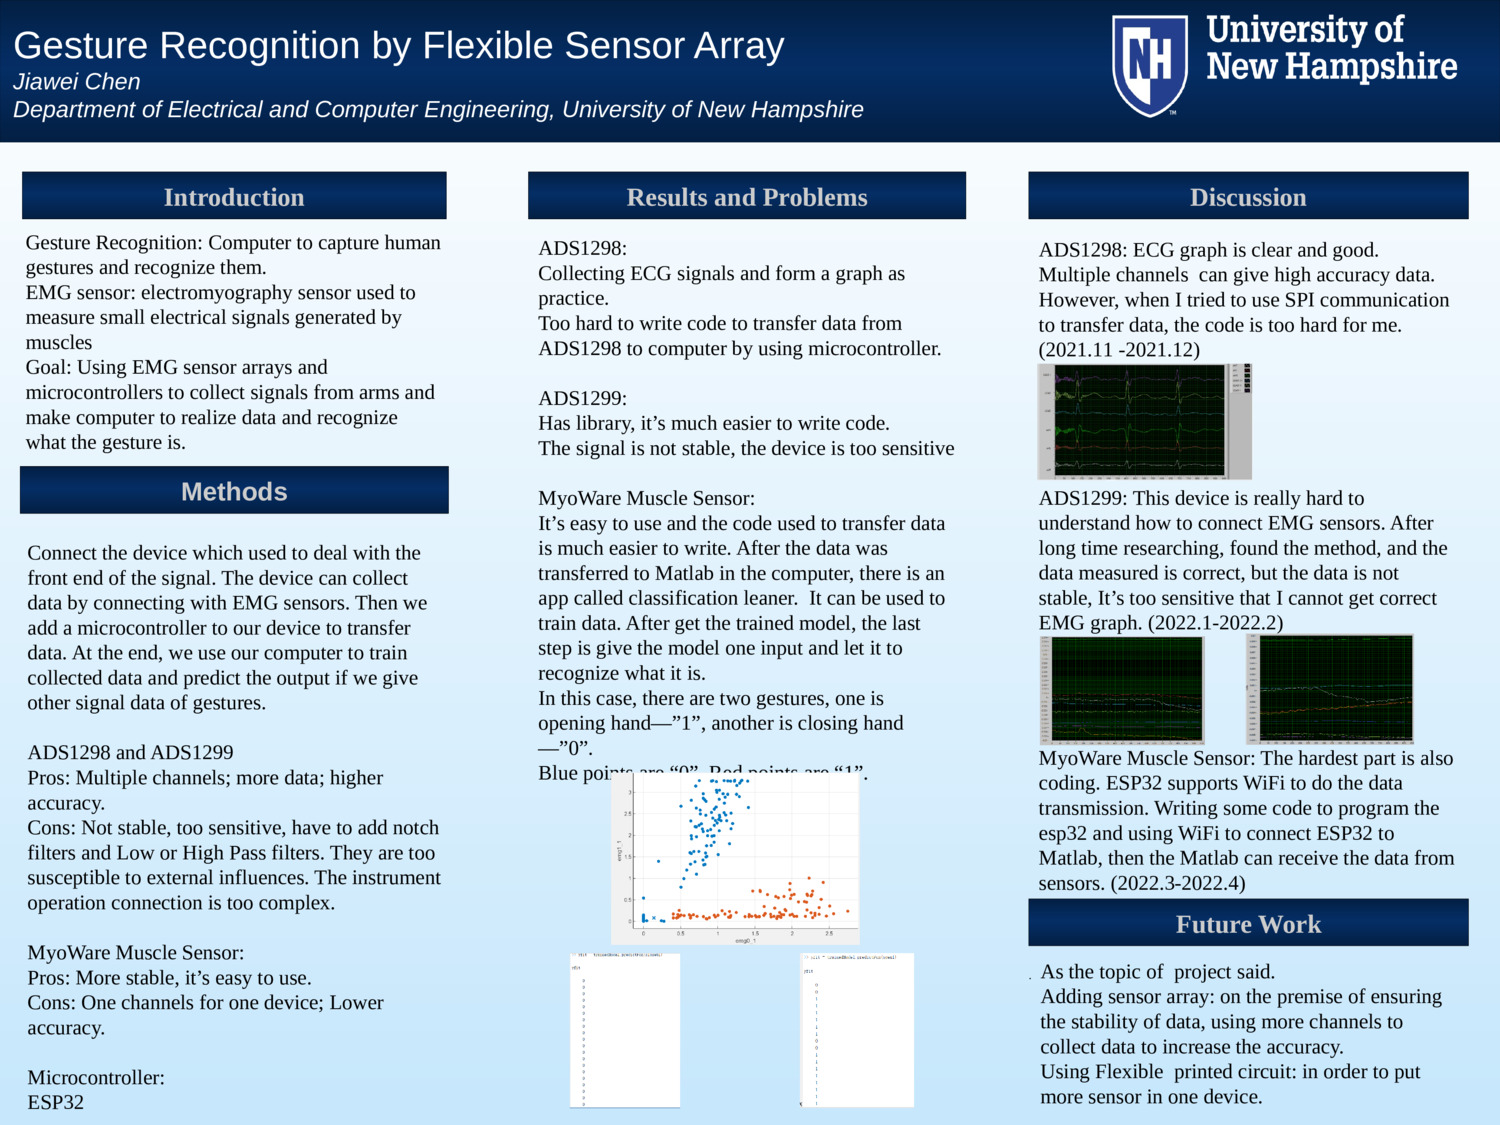 Gestrue Recognition By Flexible Sensor Array by jc1475